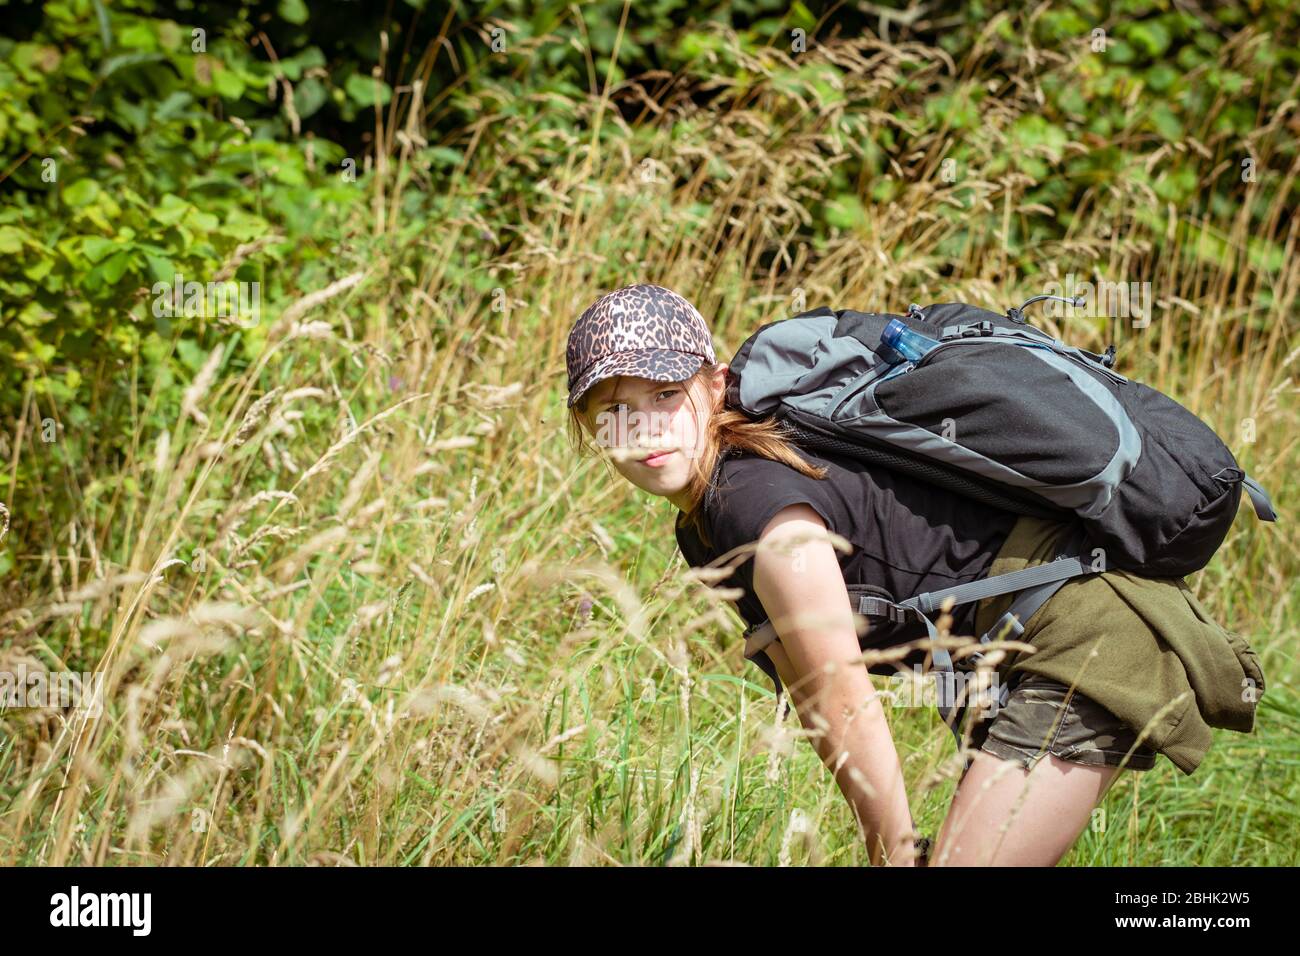 Adolescente ragazza esplorare la natura su una lunga escursione in campagna con zaino Foto Stock